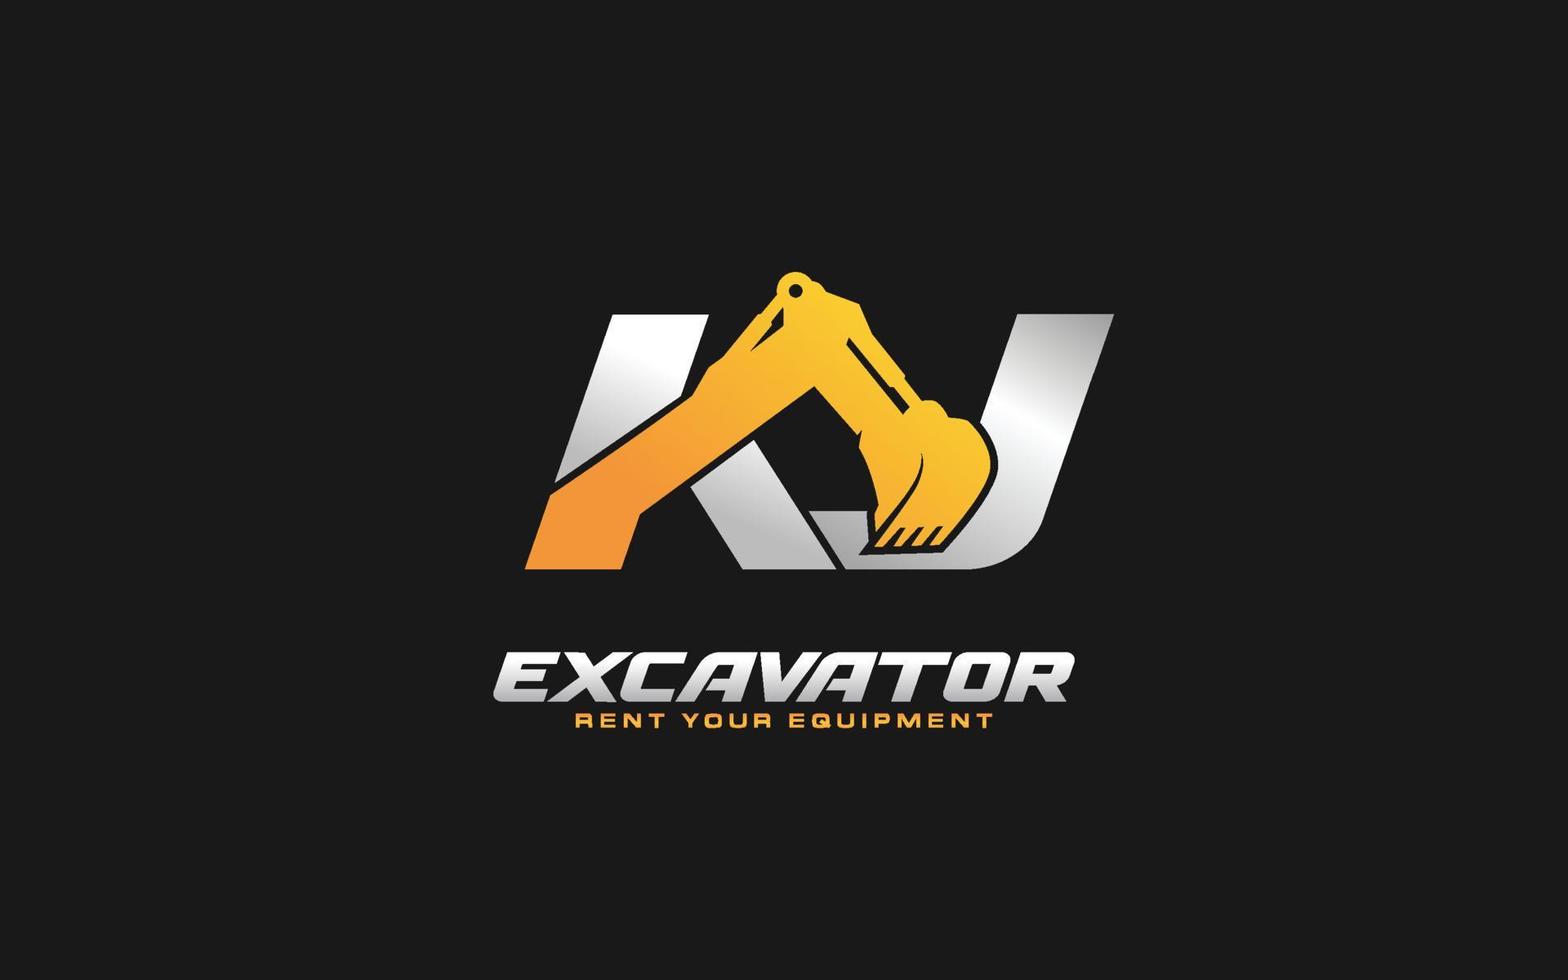 Excavadora de logotipo kj para empresa constructora. ilustración de vector de plantilla de equipo pesado para su marca.